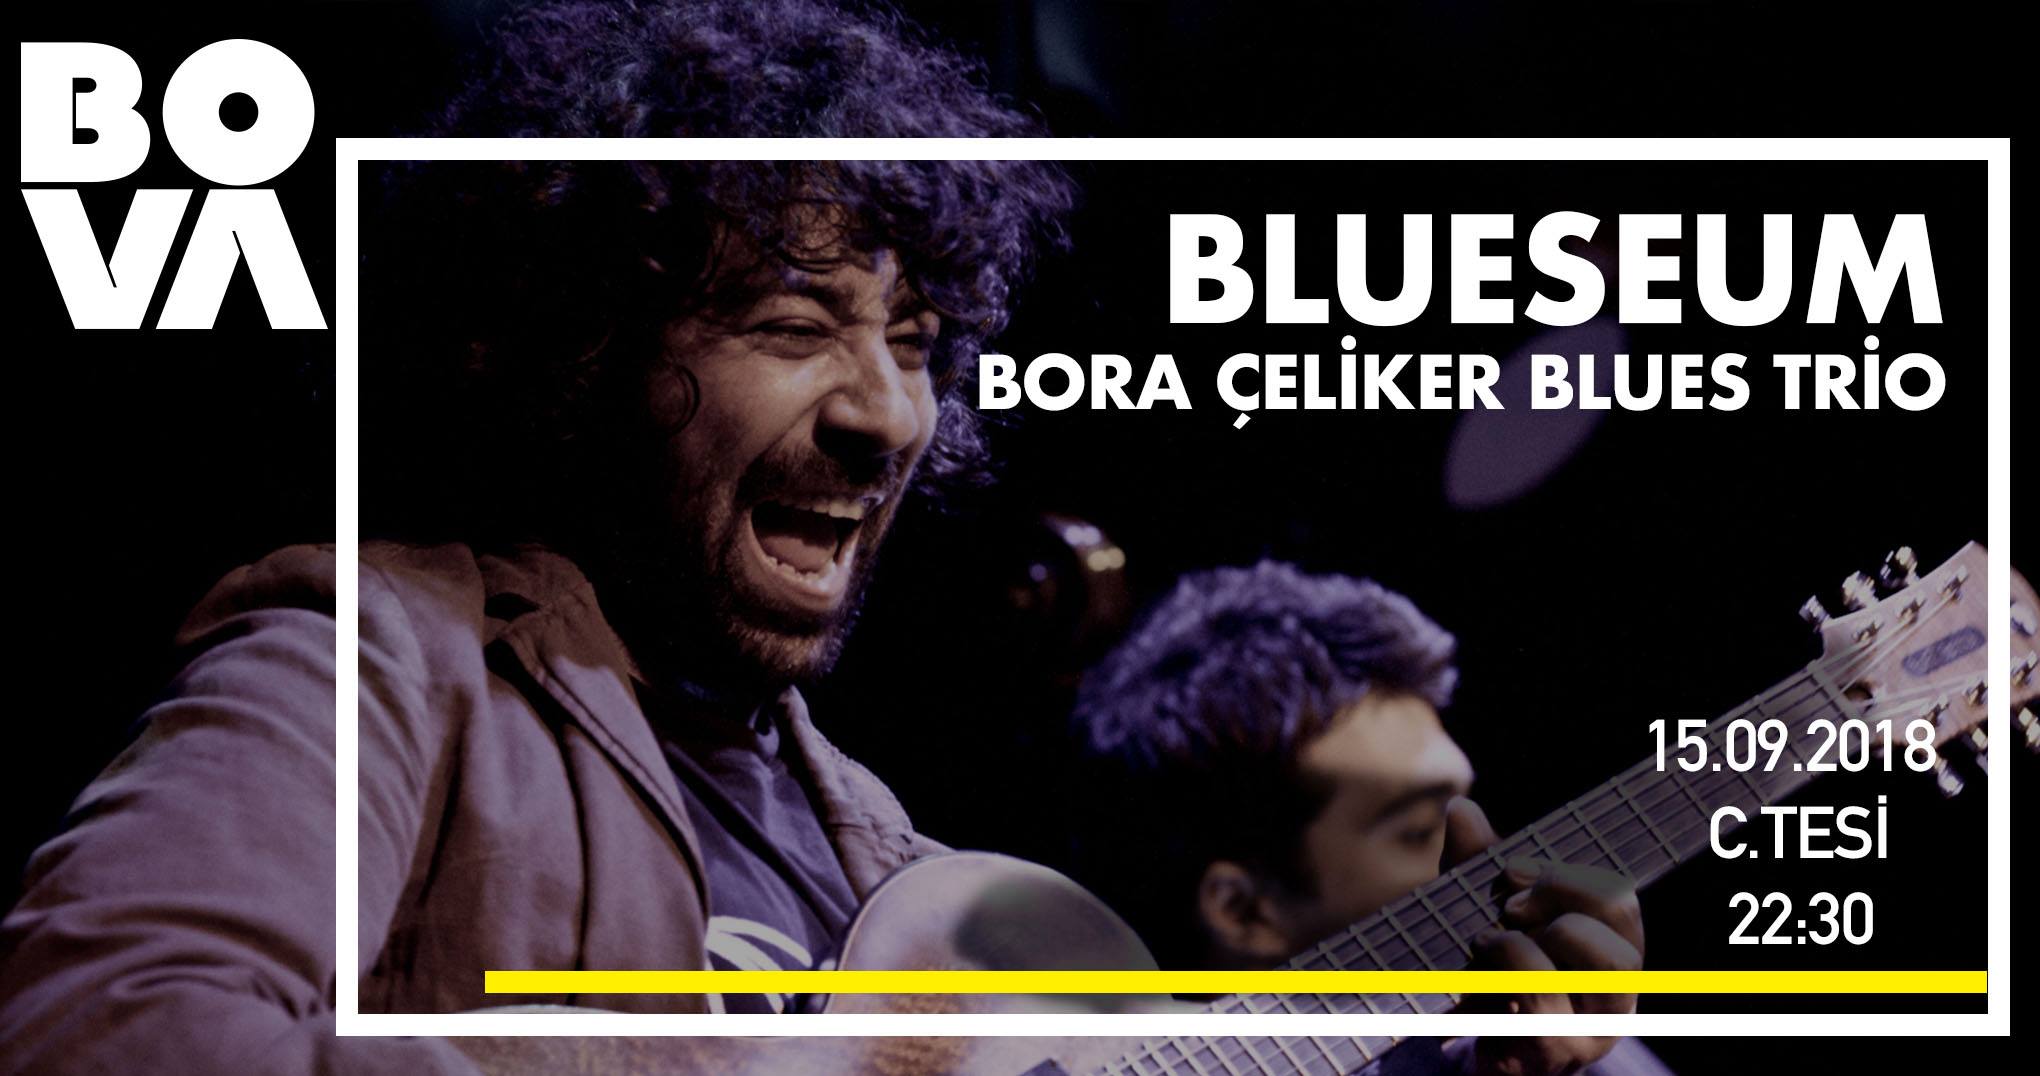 Blueseum Bora Çeliker Blues Trio